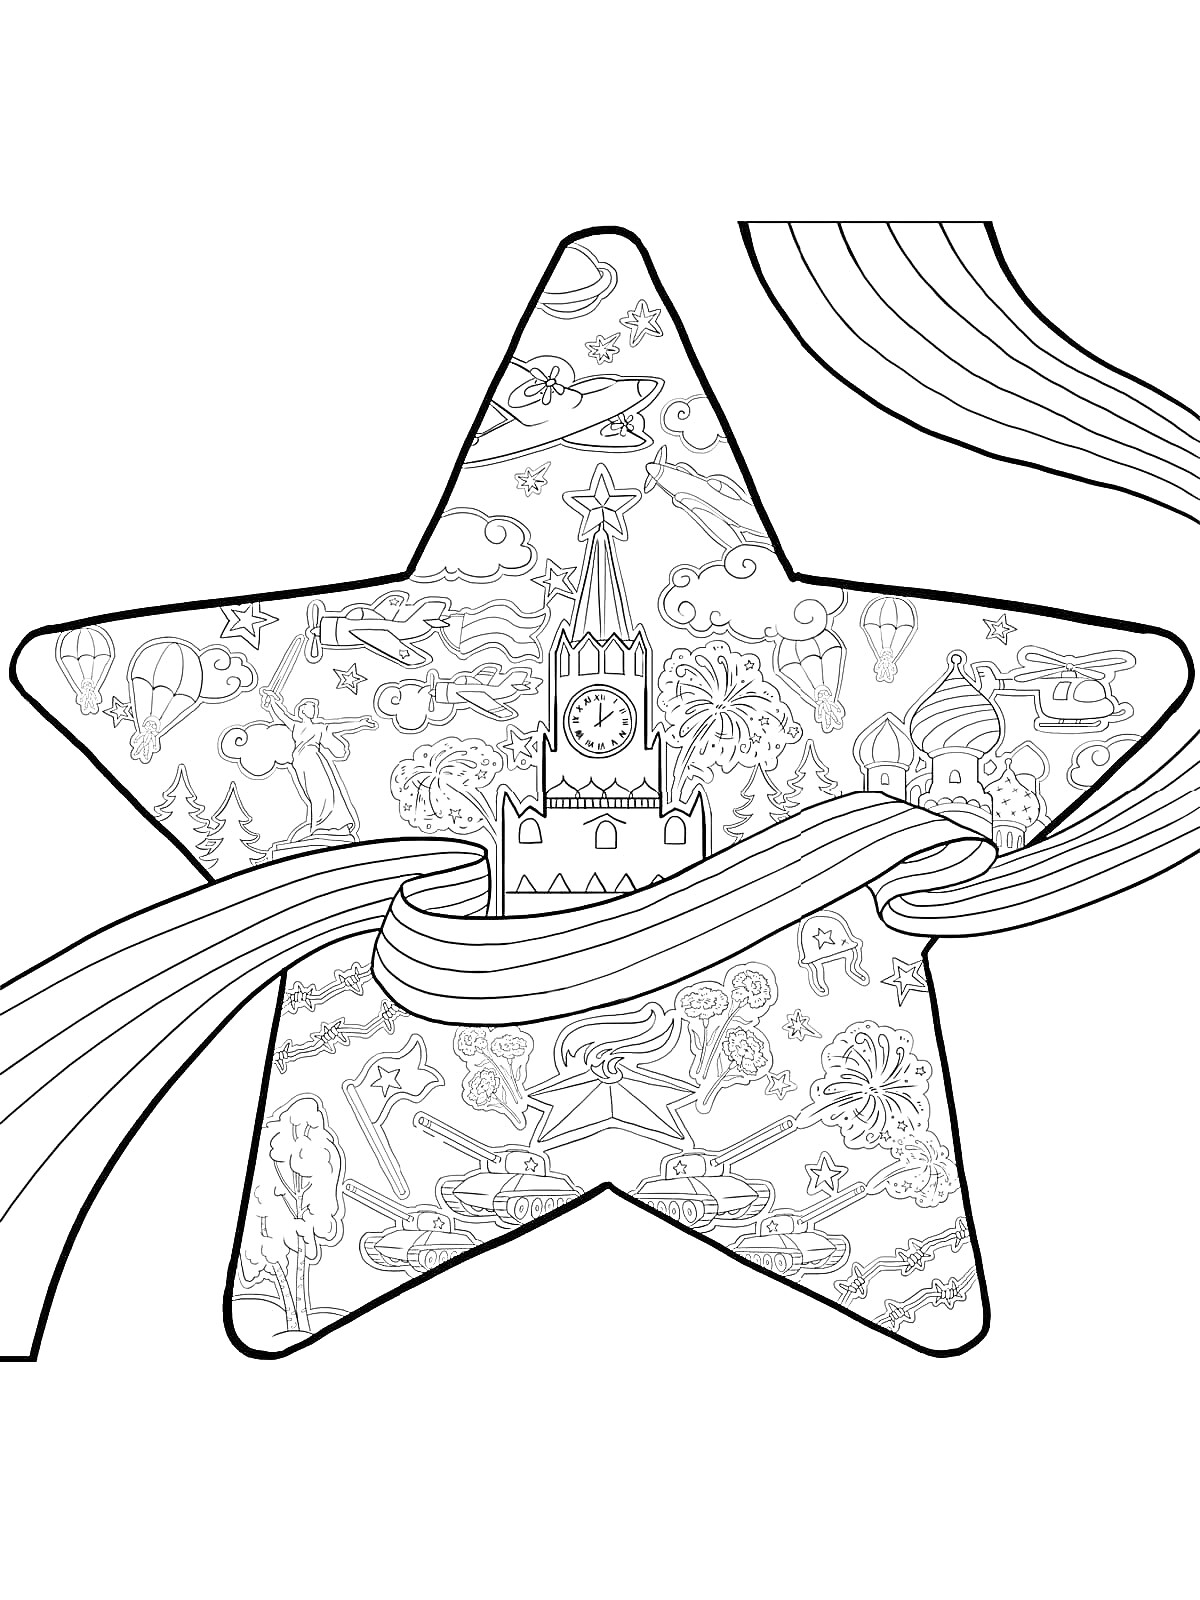 Раскраска Звезда с часами и элементами Кремля, окруженная лентами и различными историческими персонажами и символами